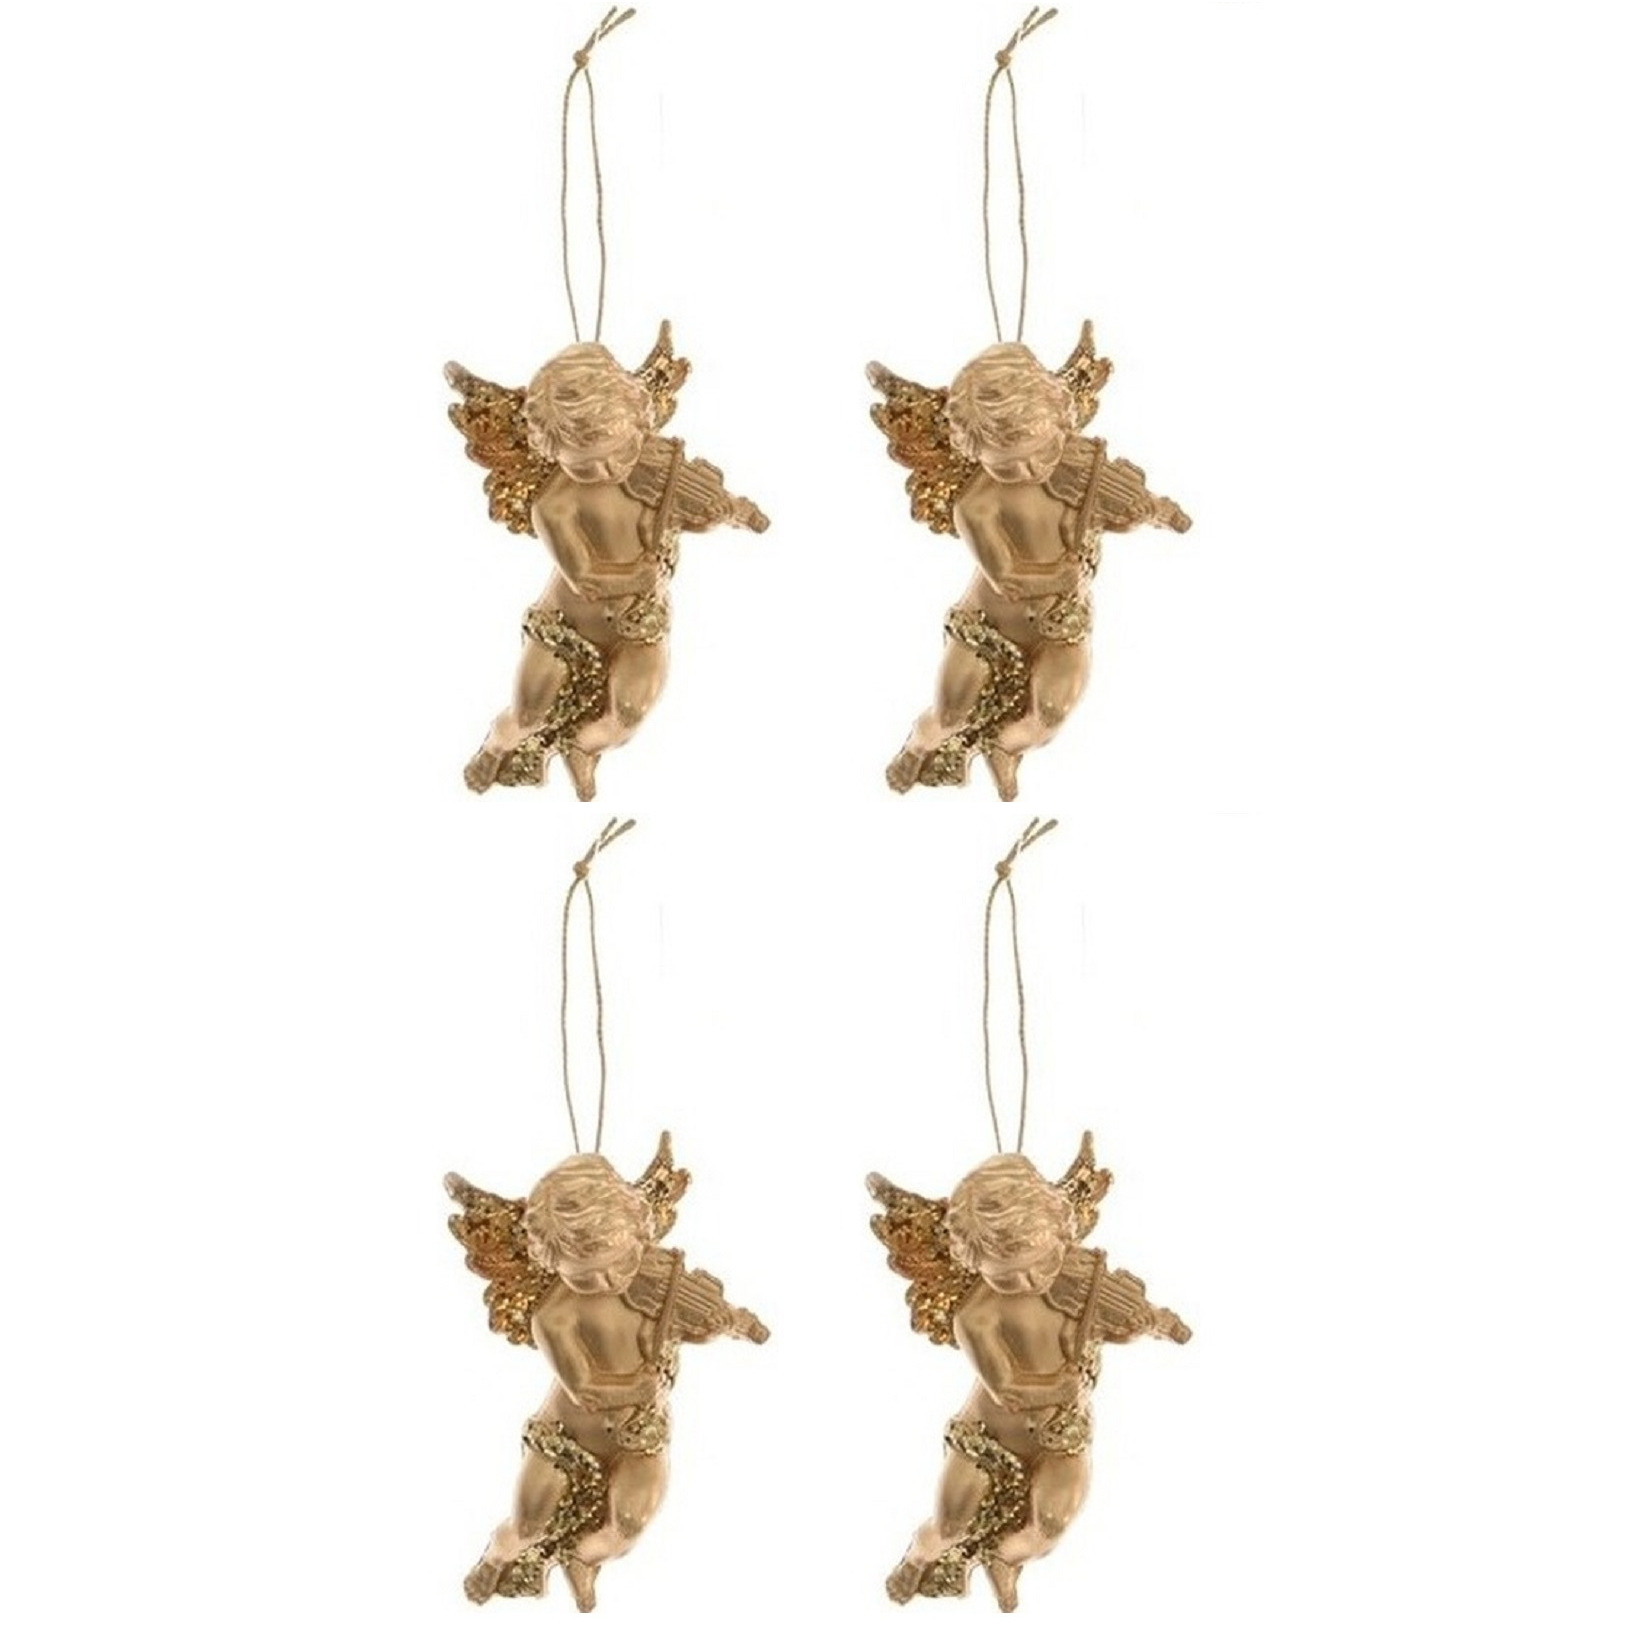 4x Kerstboomhanger-Kersthanger gouden engelen met viool 10 cm